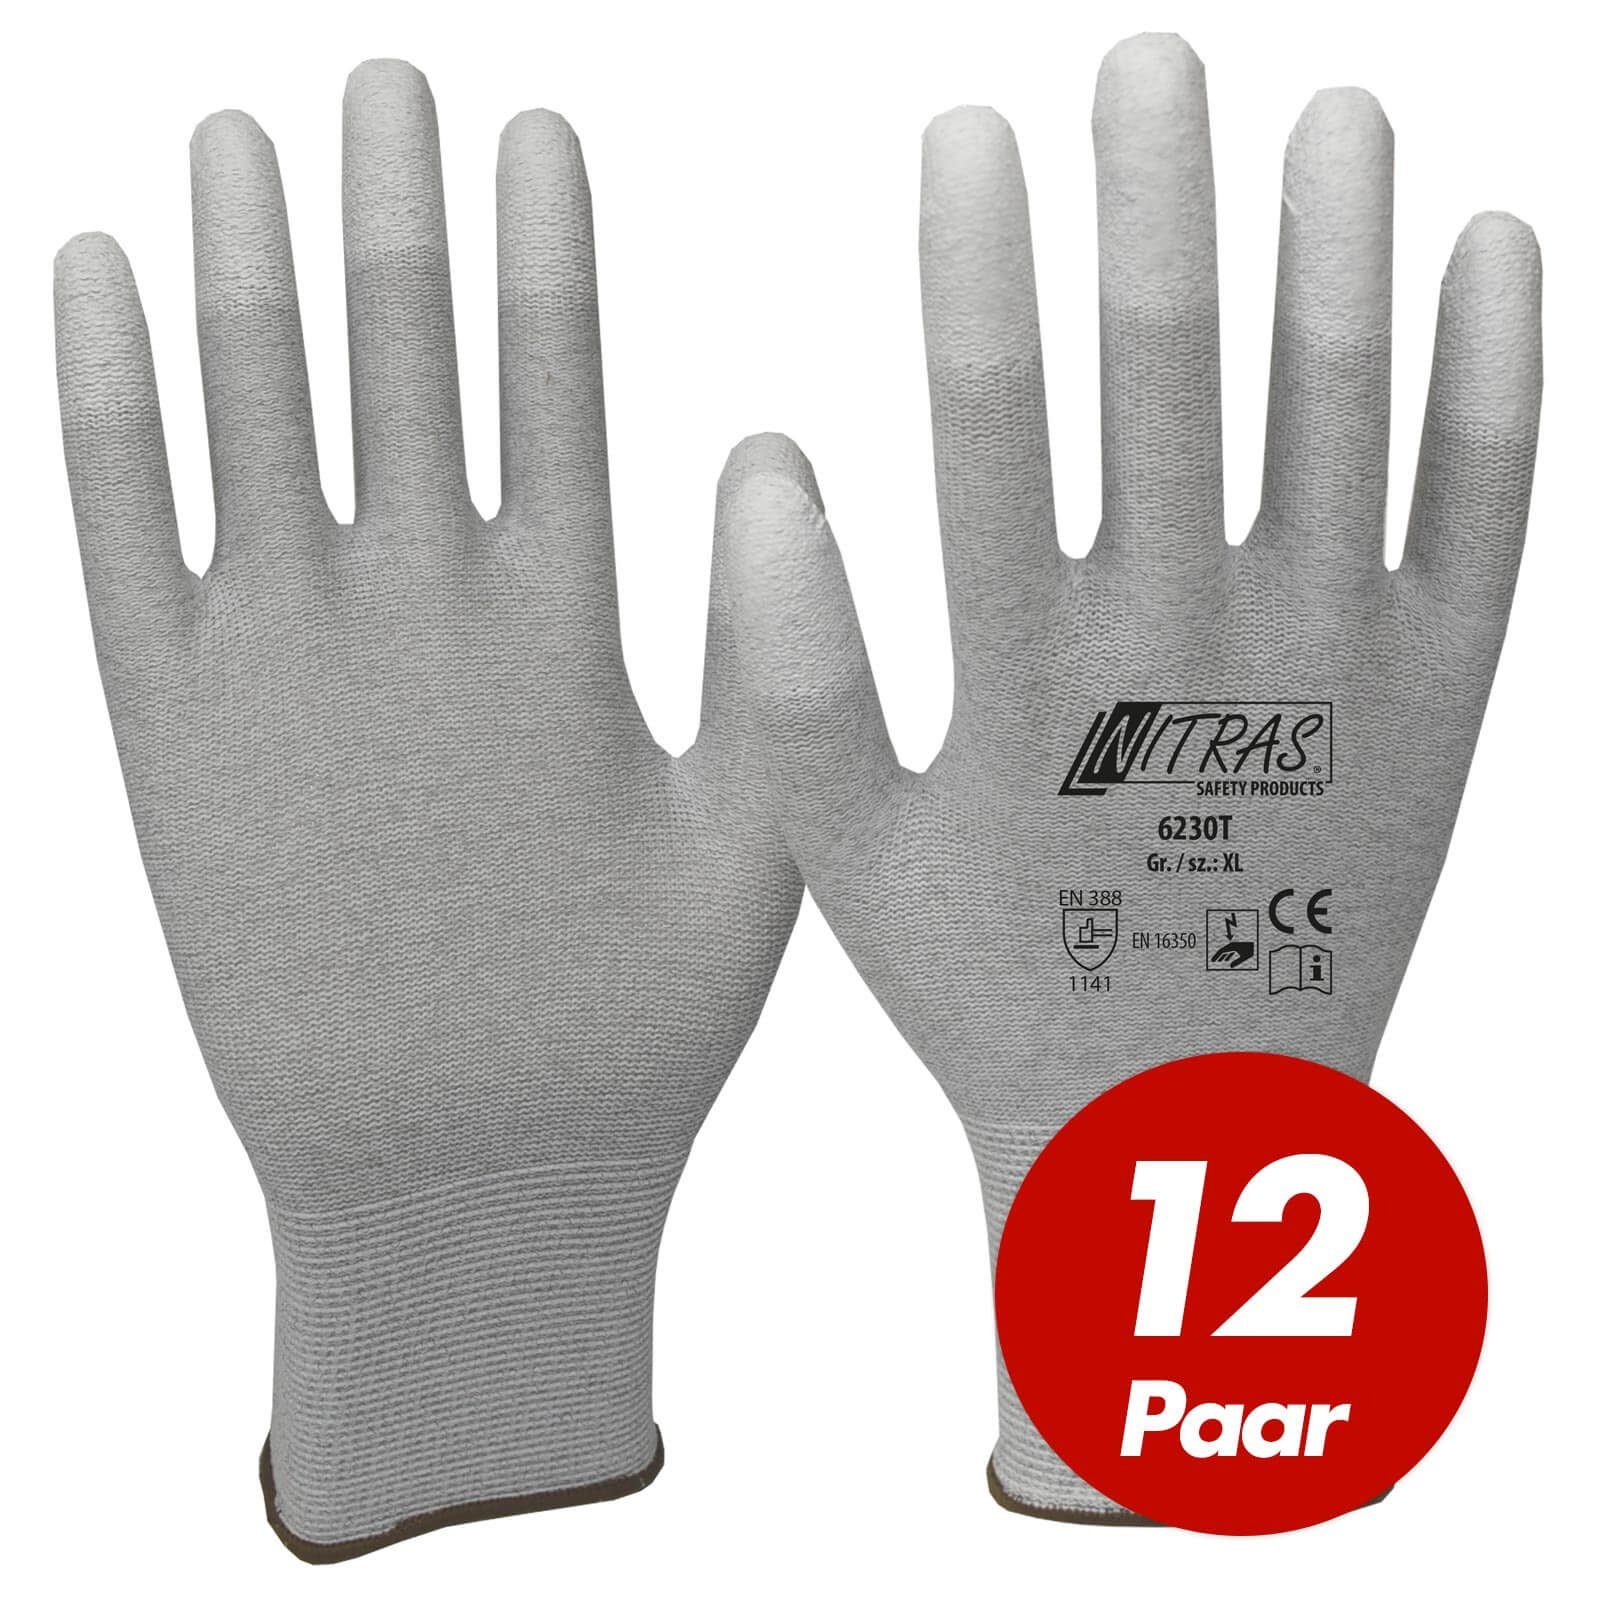 Nitras Mechaniker-Handschuhe ESD-Handschuhe 6230T, antistatisch, touchscreenfähig - 12 Paar (Spar-Set)